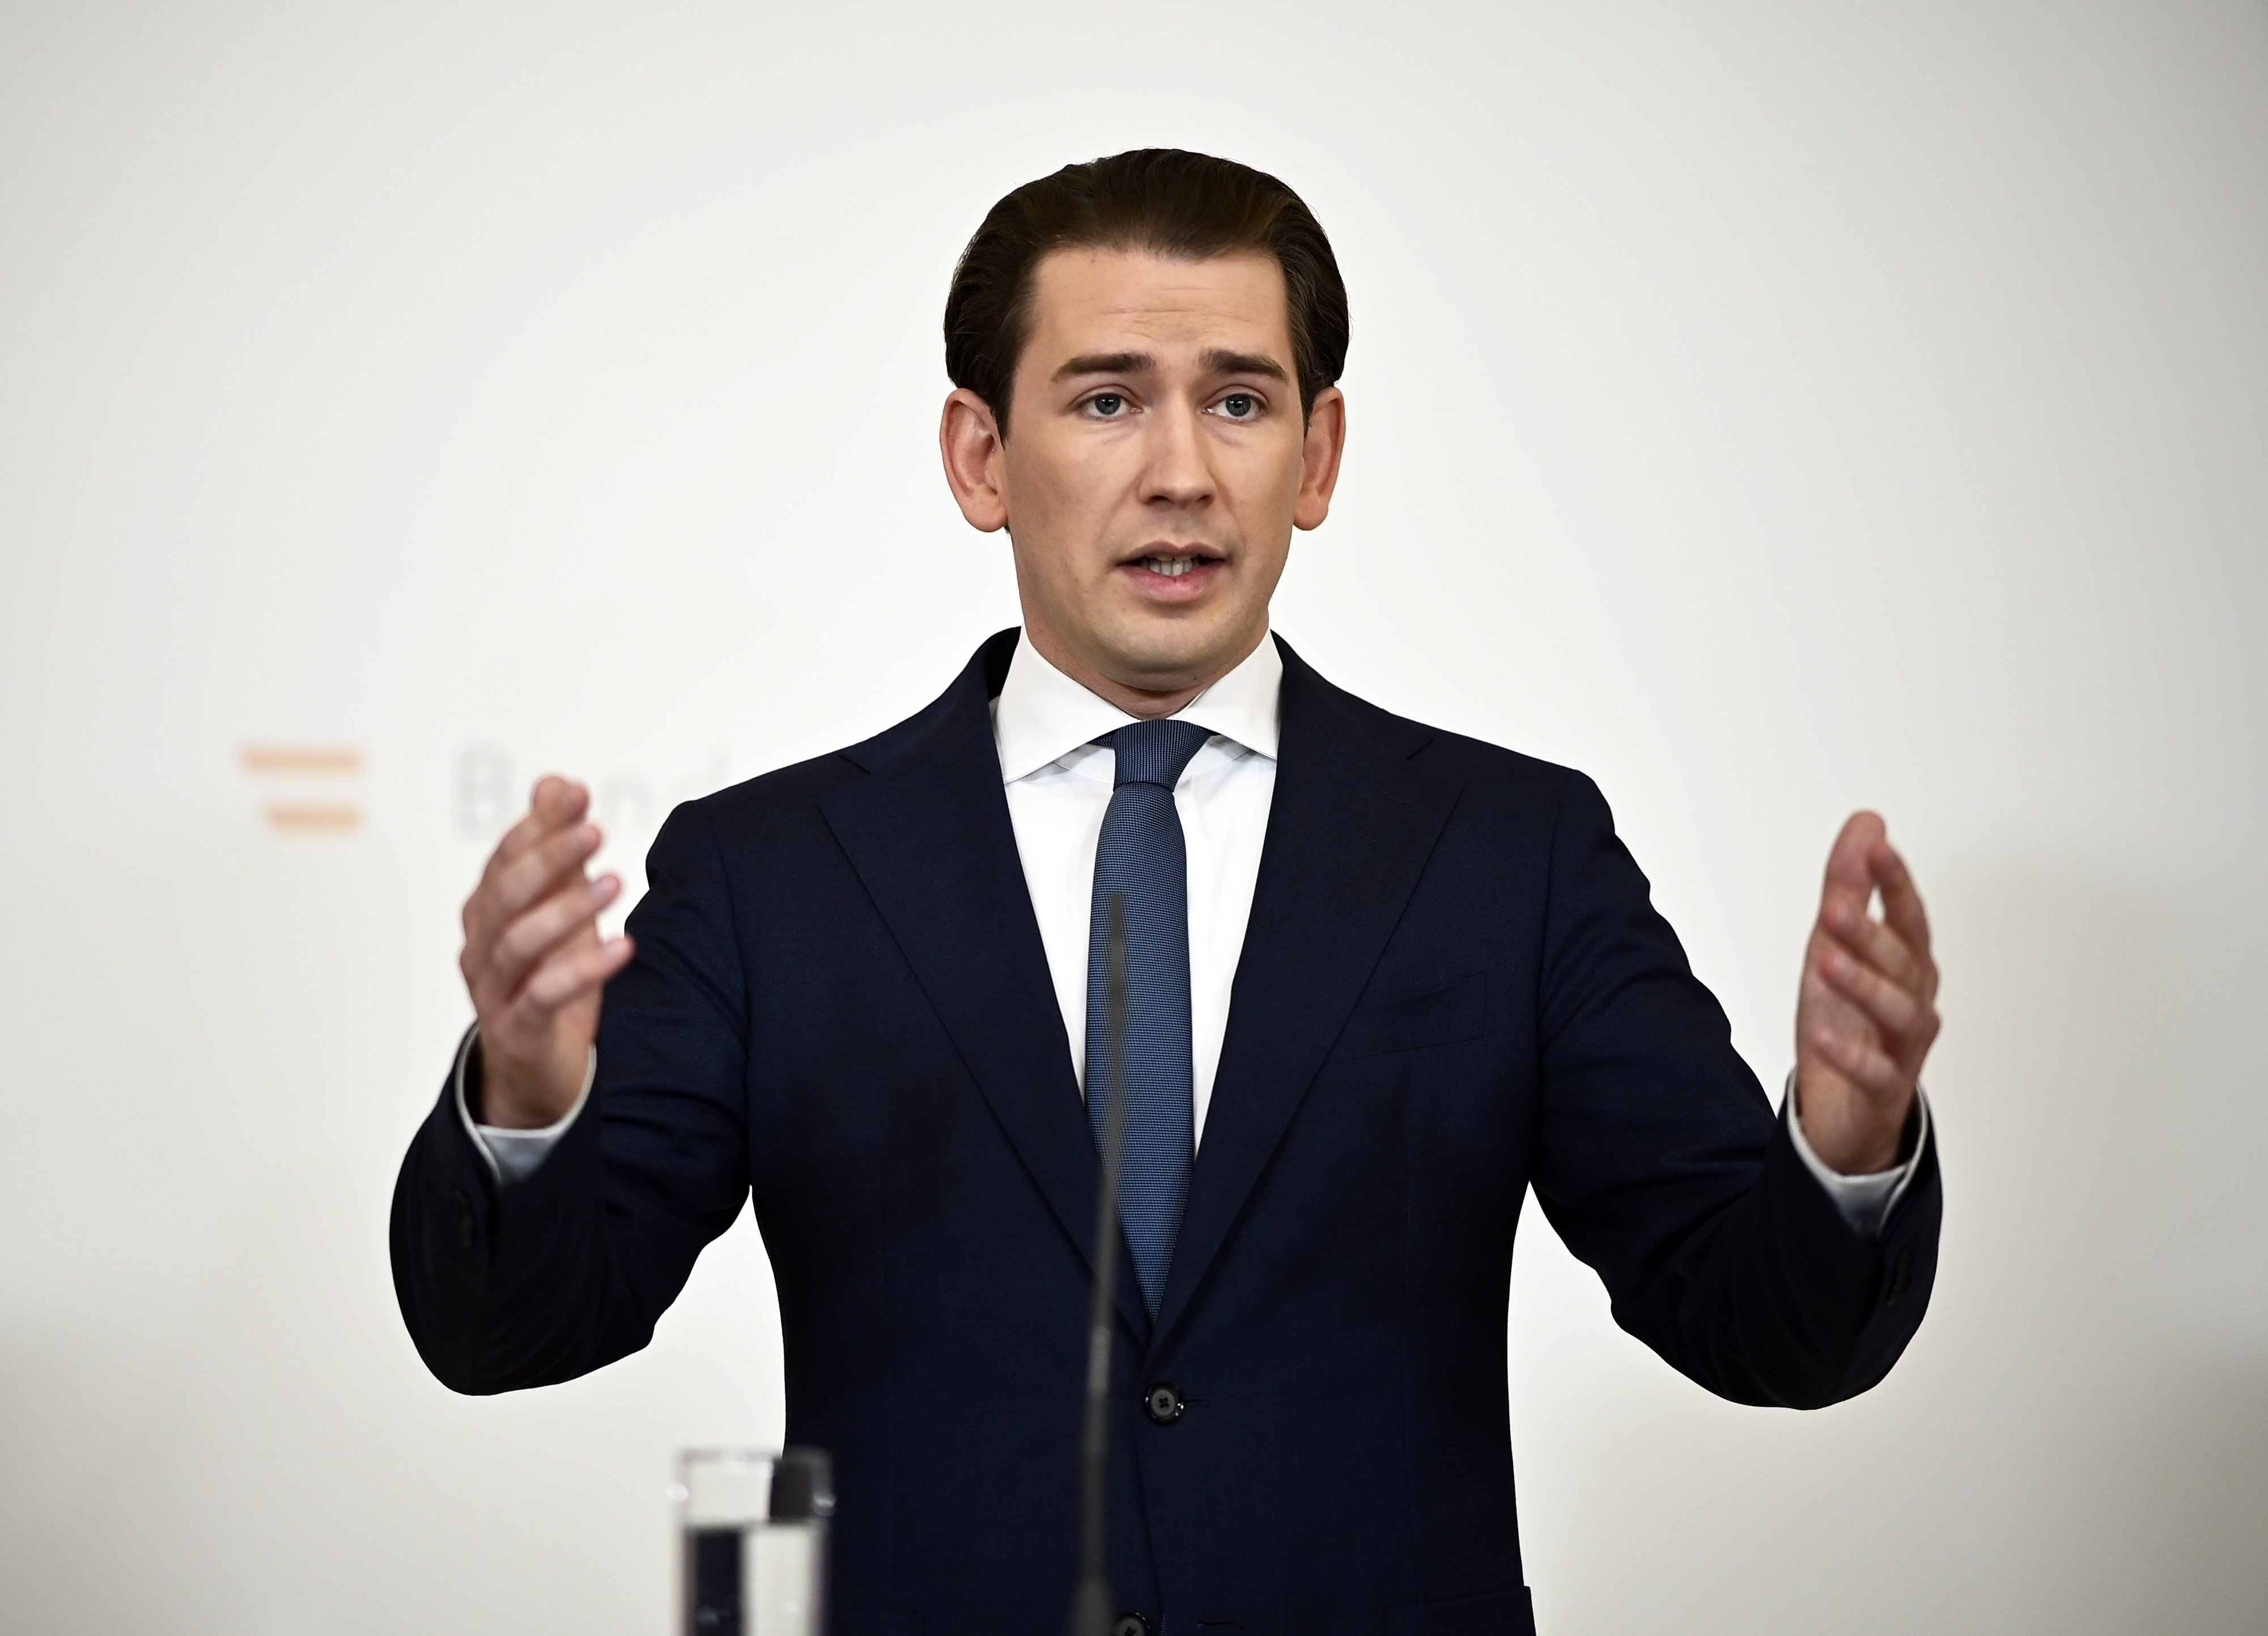 El escándalo que ha hecho dimitir al canciller de Austria